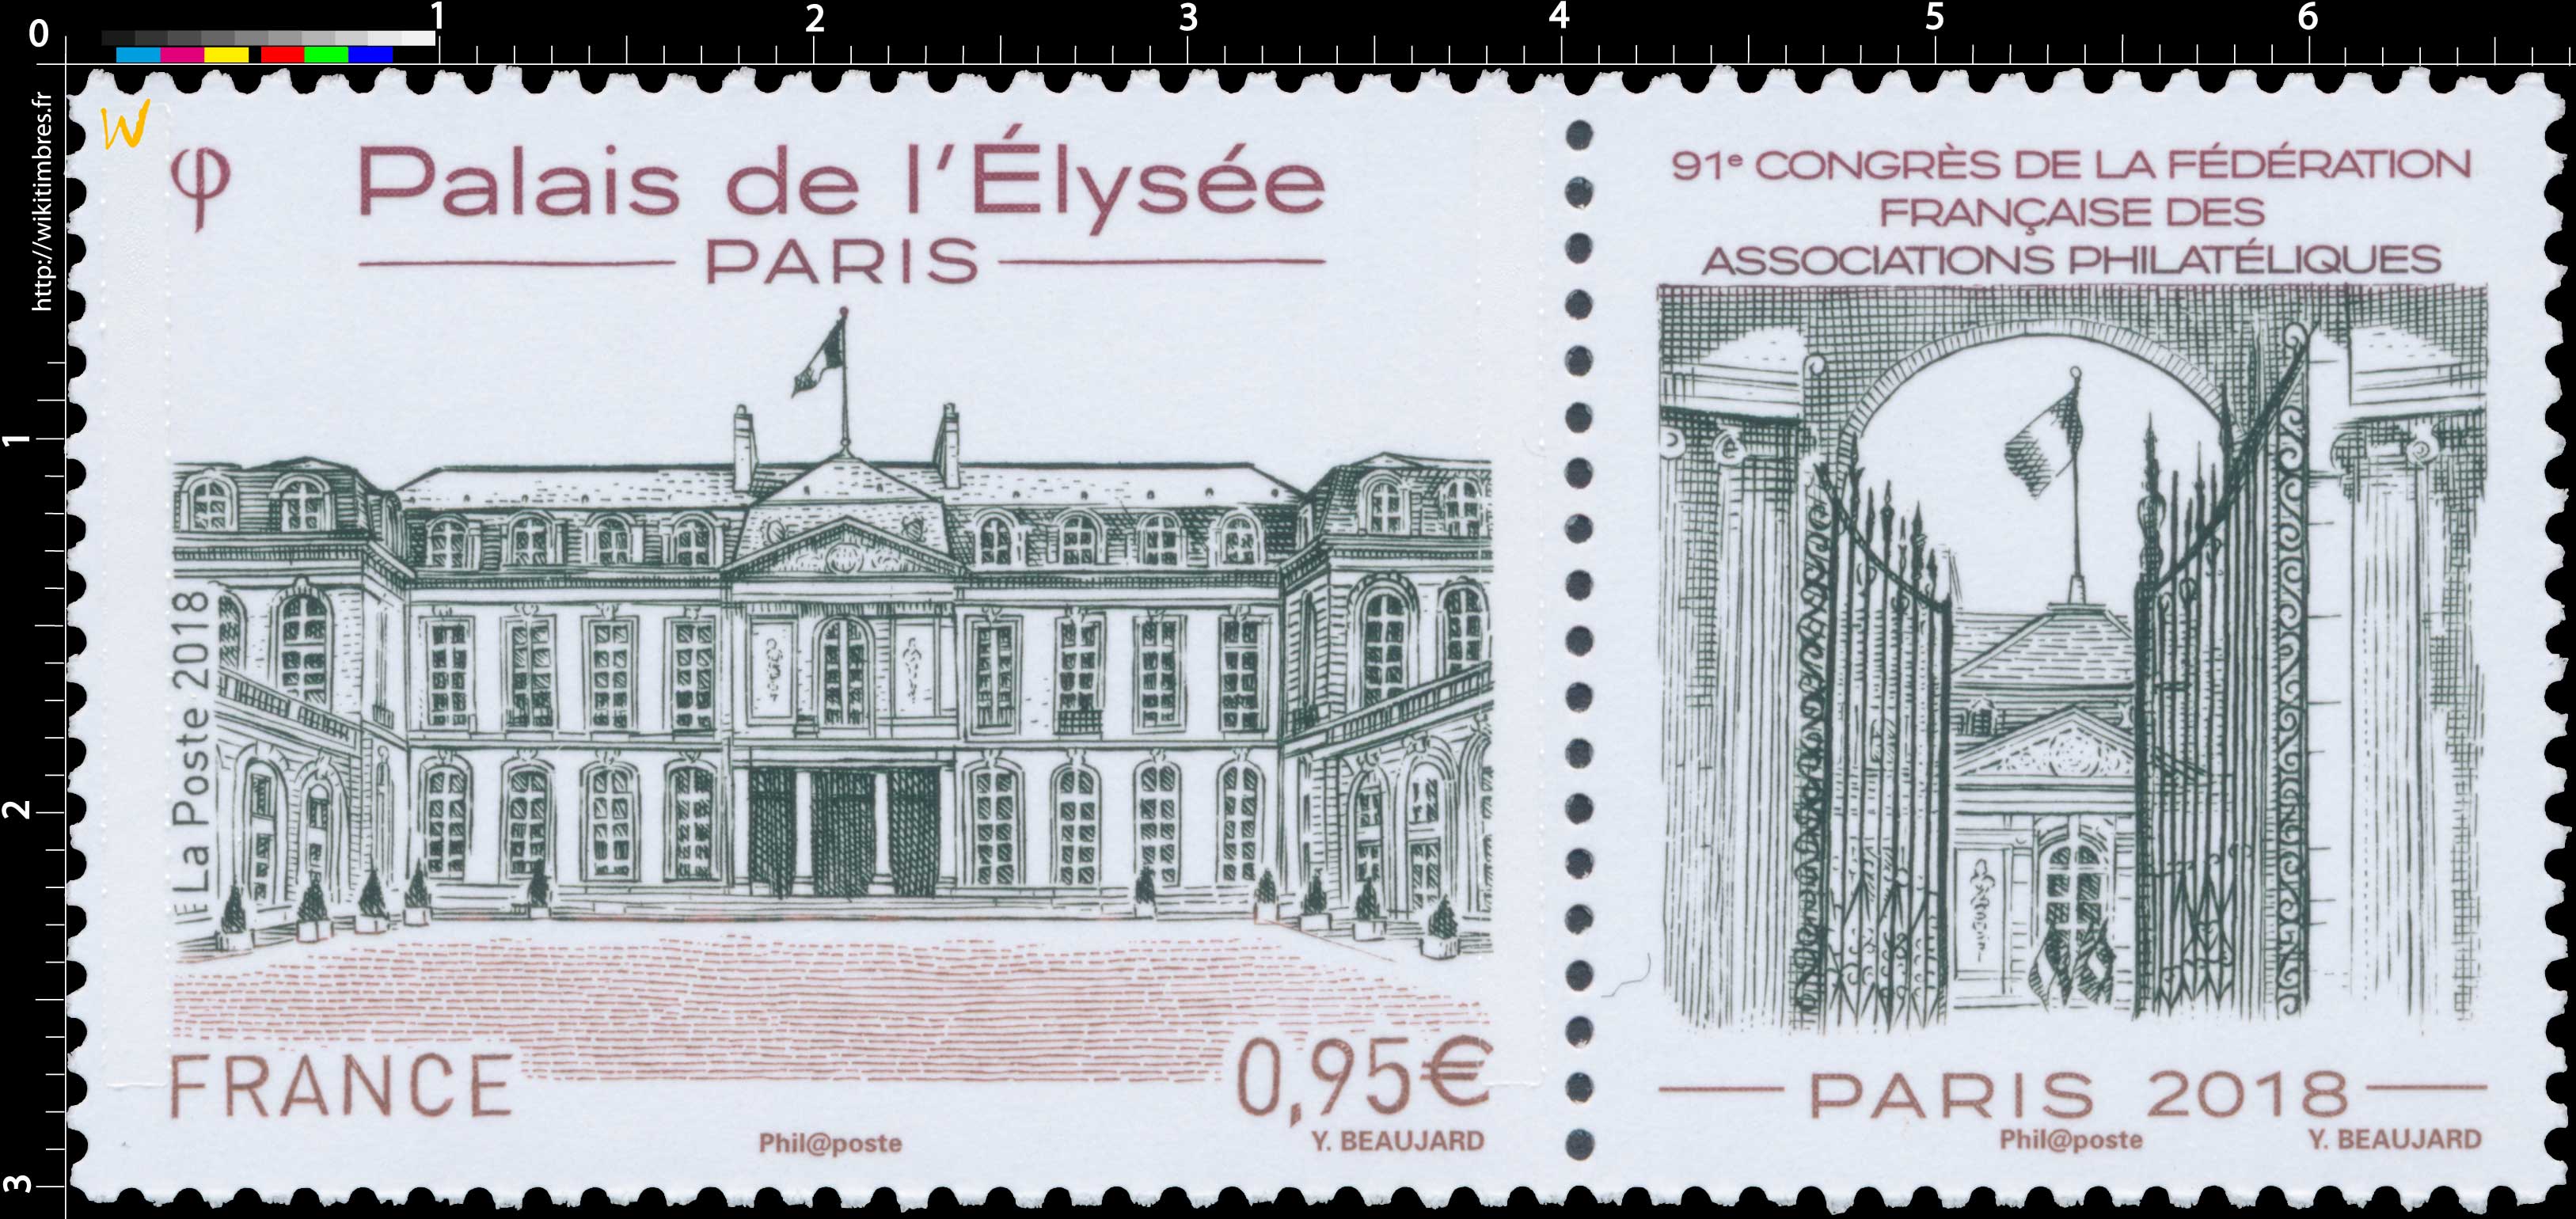 2018 Palais de l'Élysée - Paris 